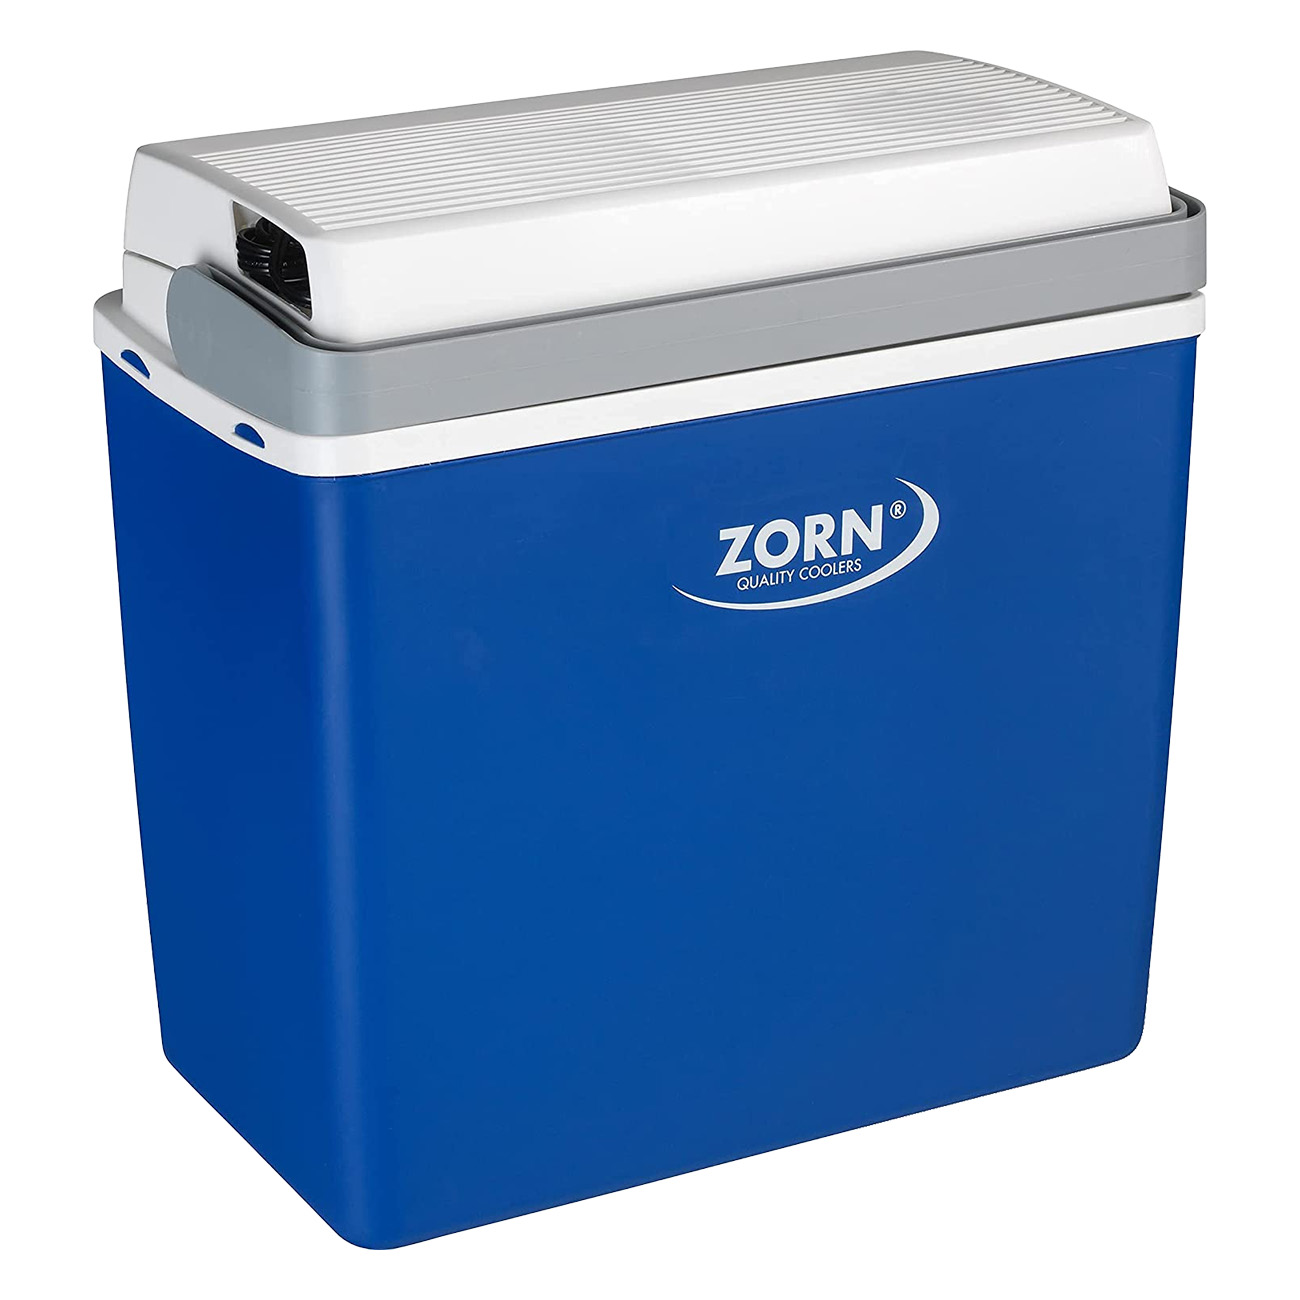 ZORN Z24 | Kühlbox | Für 12 Volt | Kühlt bis zu 15°C unter Umgebungstemperatur | Hochwertige EPS-Vollschaumkern-lsolierung sorgt für langanhaltende Kühlwirkung